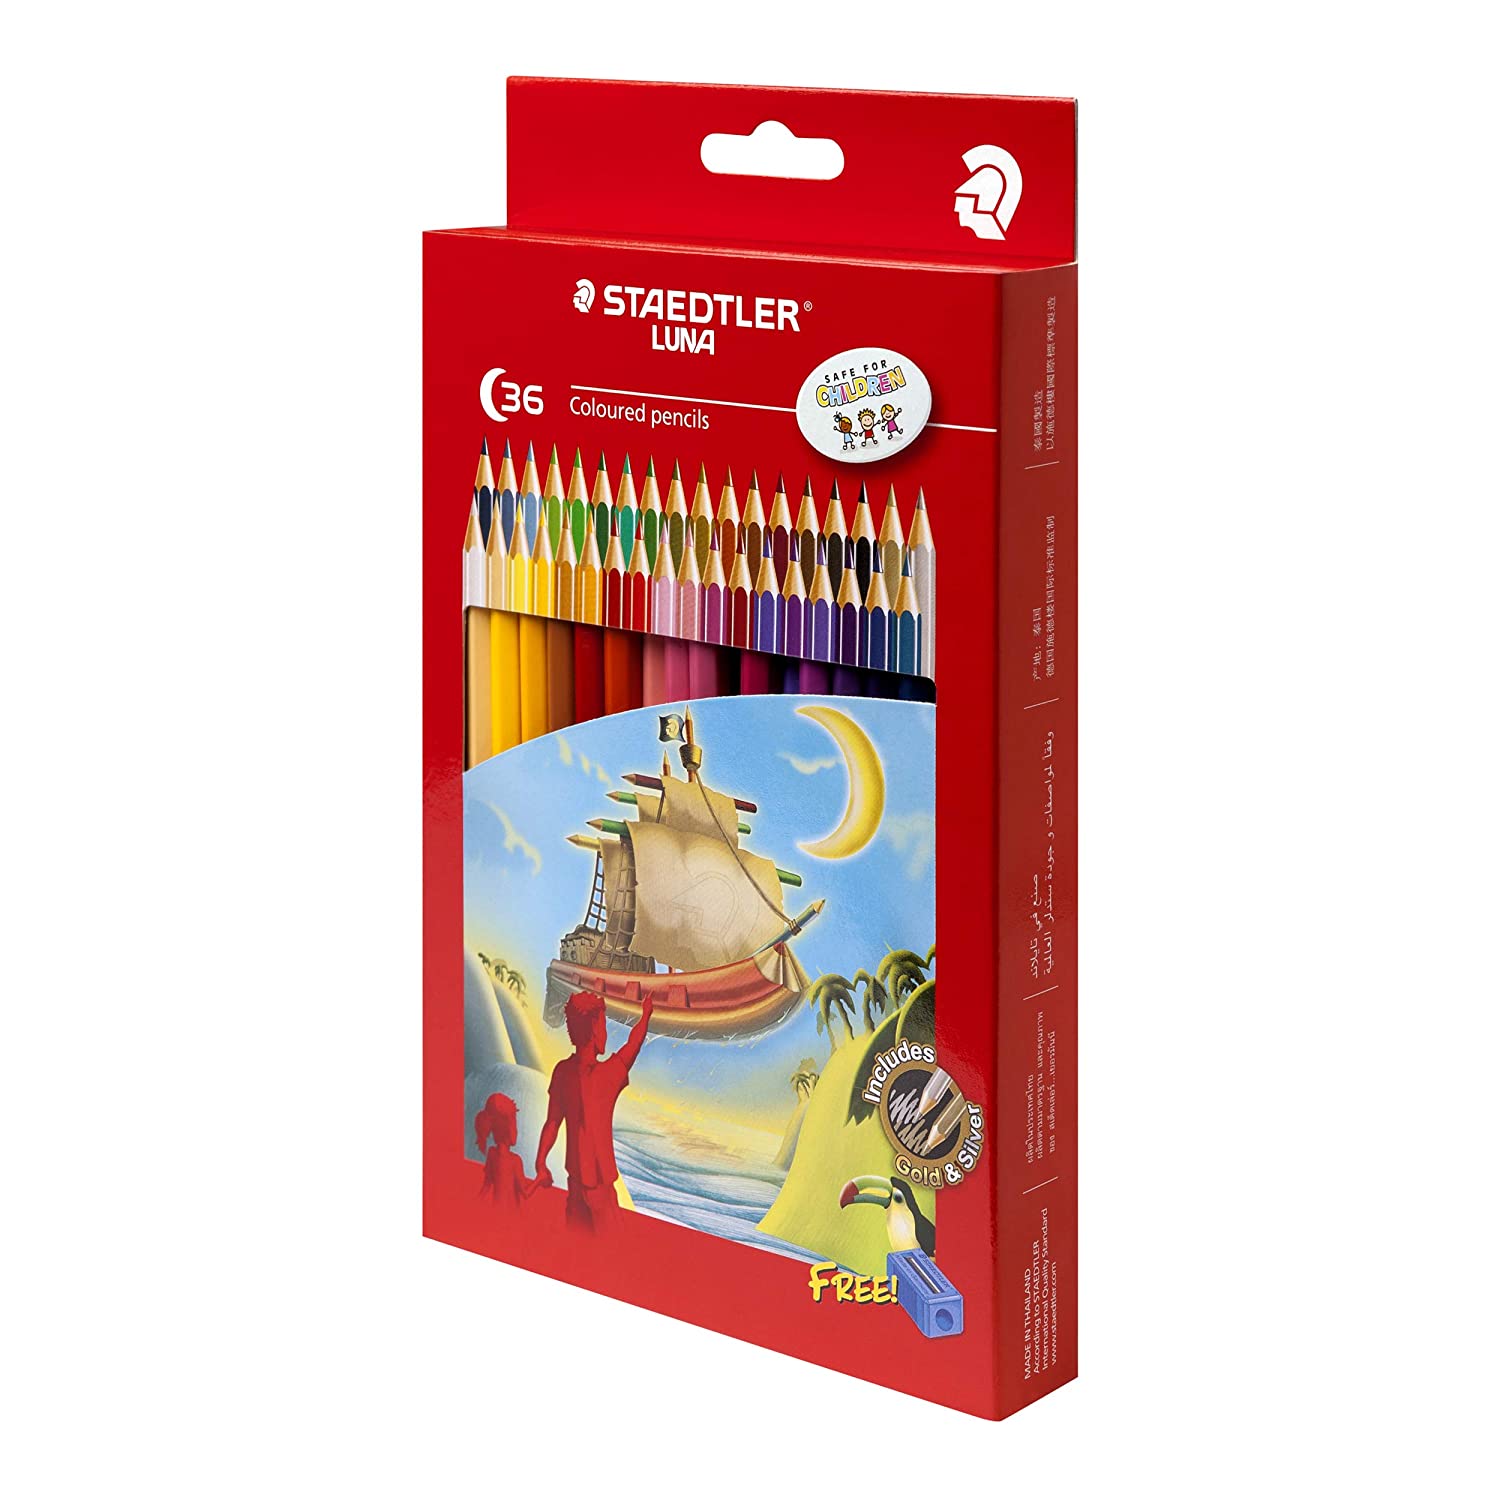 Detec™ स्टैडलर लूना रंगीन पेंसिल सेट (36 रंग पेंसिल) 10 का पैक